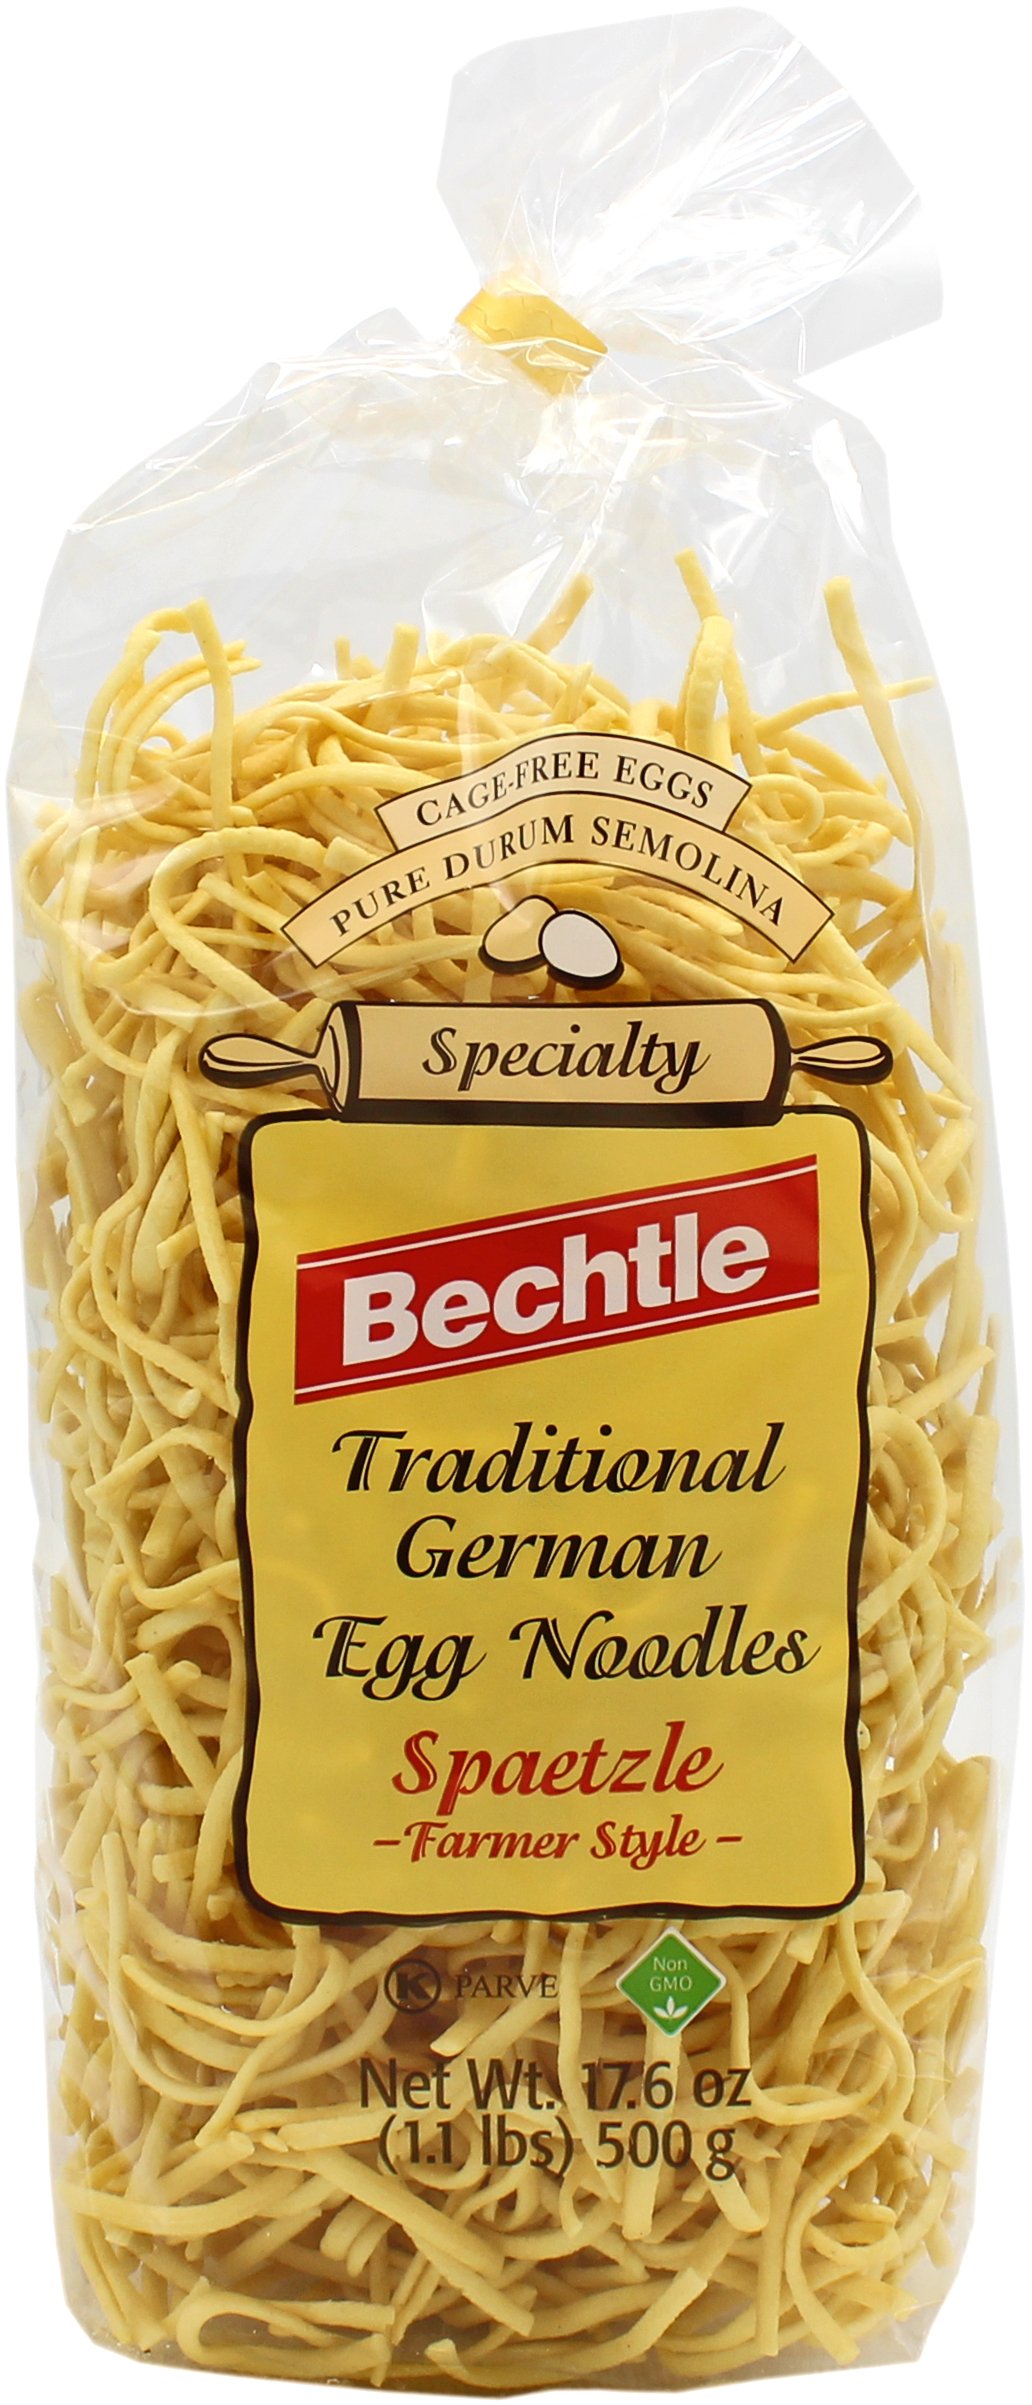 Bechtle Traditional German Egg Noodles